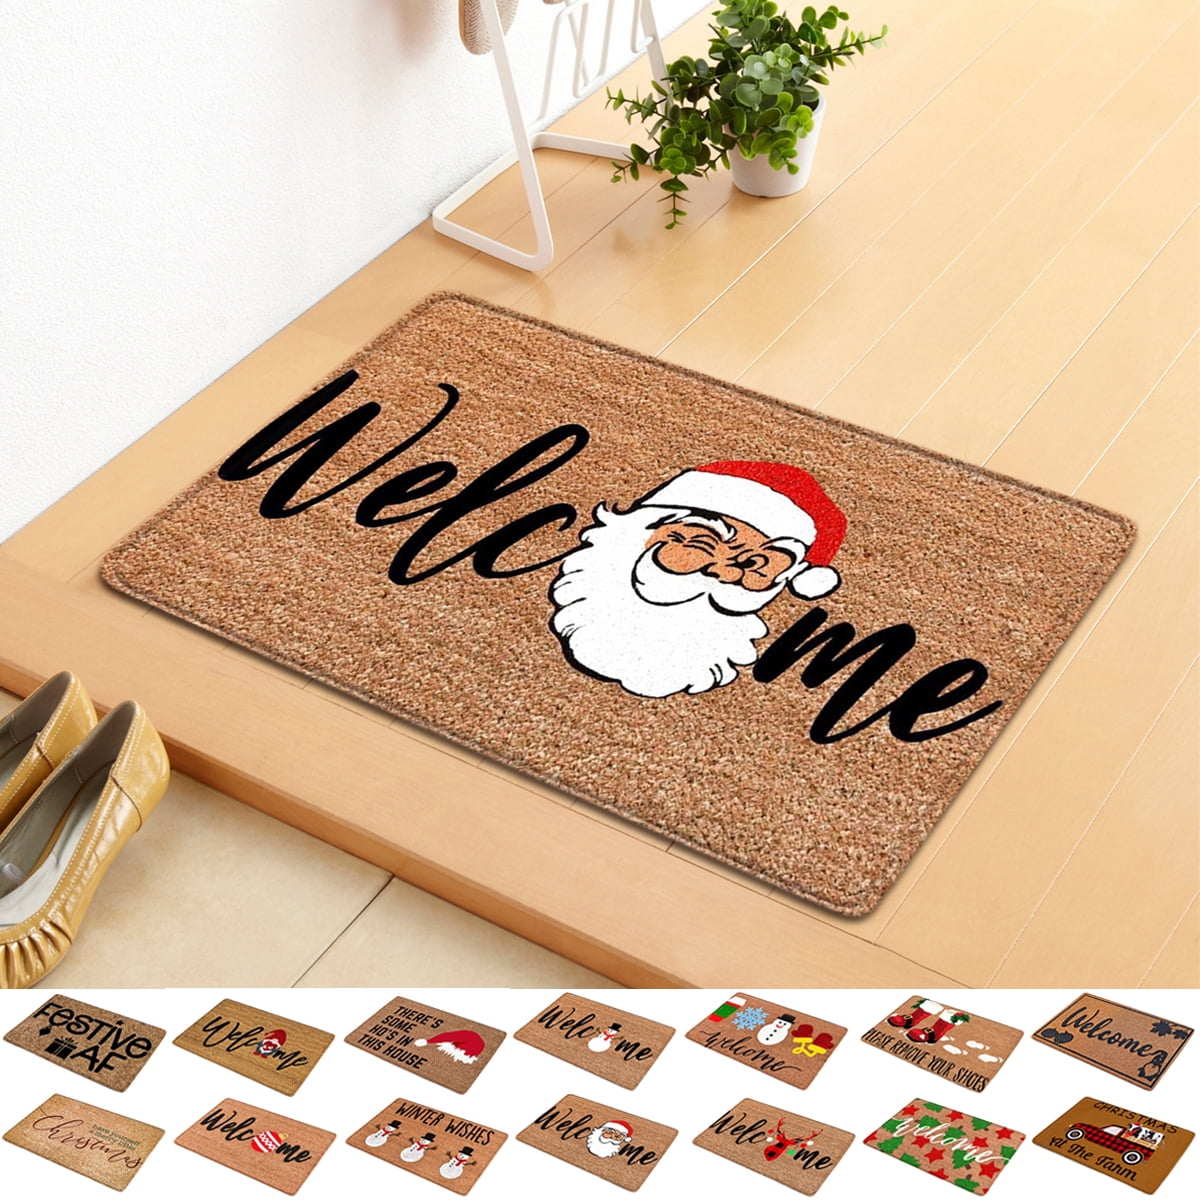 Christmas Rugs Winter Holiday Welcome Doormats Non-Skid Floor Mat for  Indoor Outdoor Home Garden Welcome Doormat, 24 x 16In 